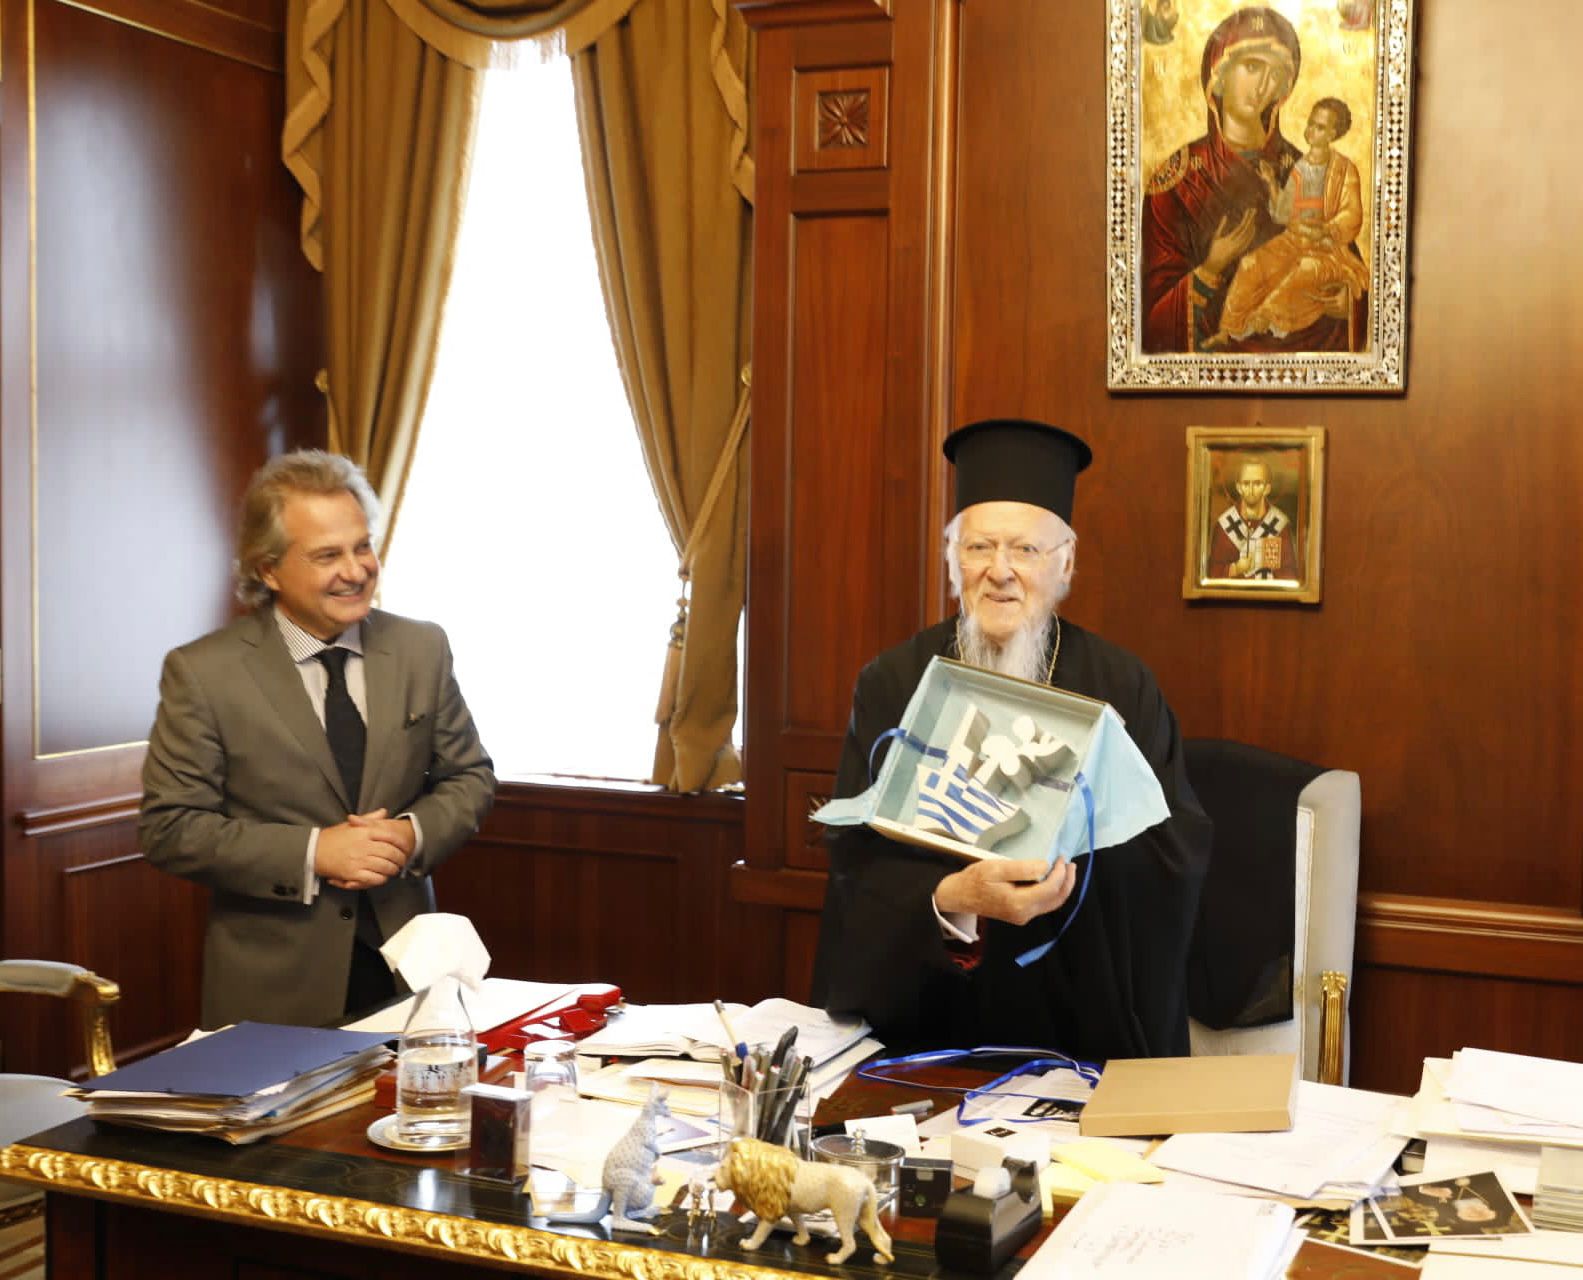 Συνάντηση των εφοπλιστών με τον πατριάρχη Βαρθολομαίο στην Κωνσταντινούπολη